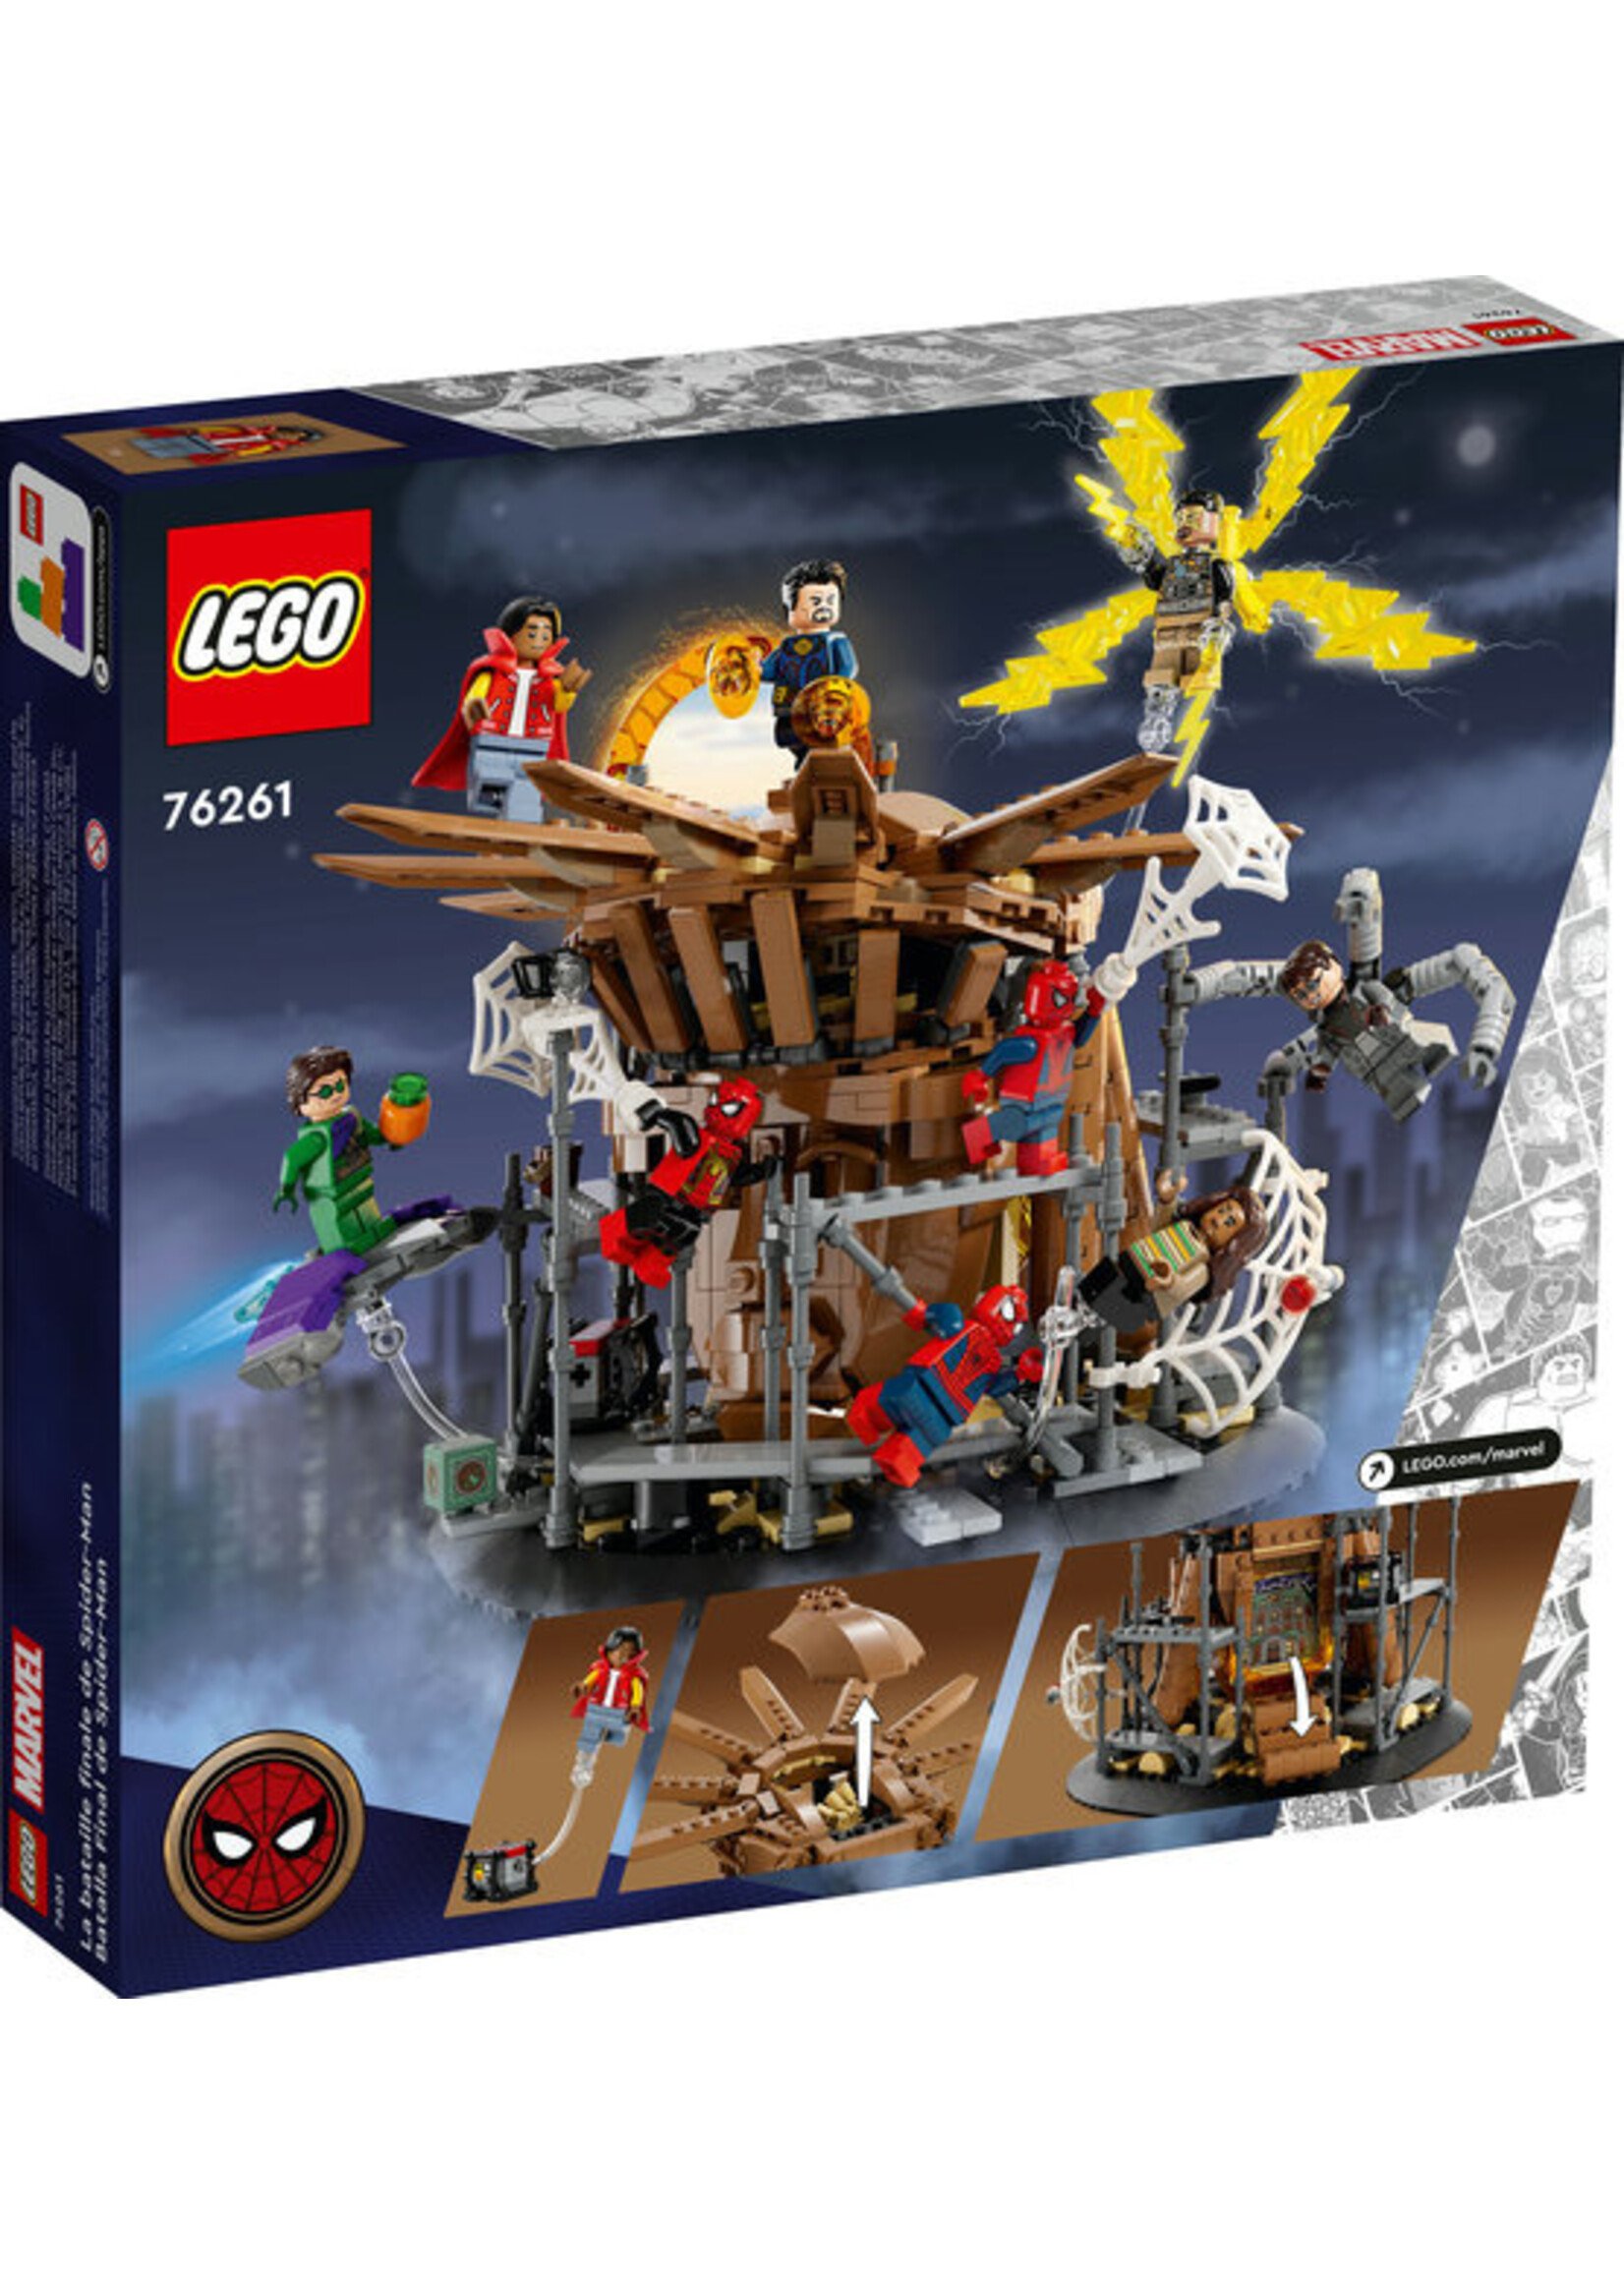 LEGO 76261 - Spider-Man Final Battle